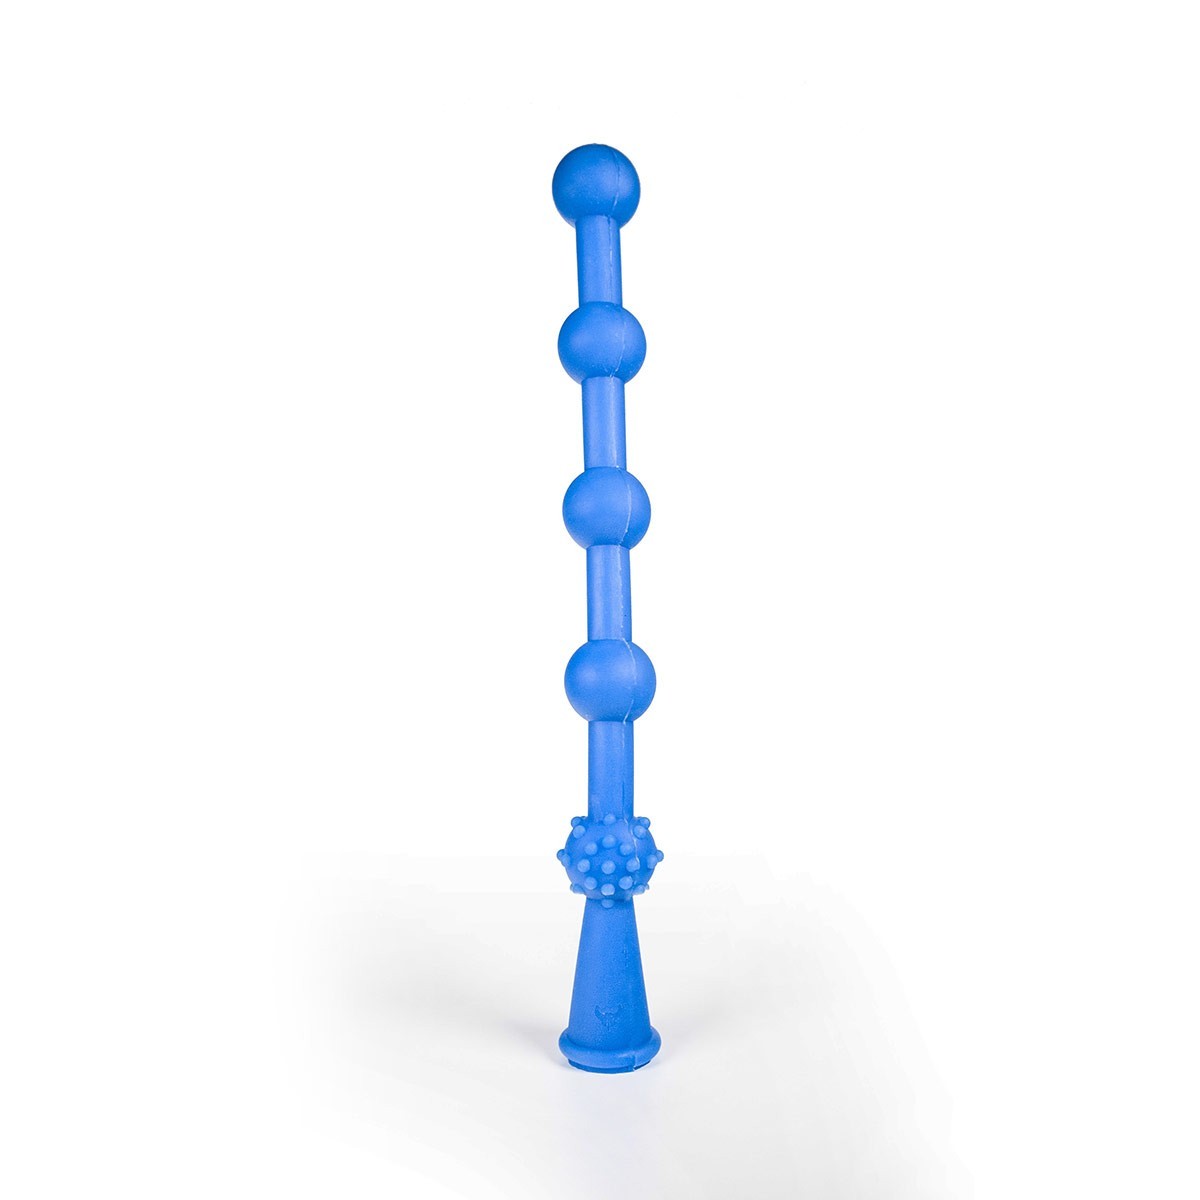 Anální kuličky Bulder Glidelas modré, silikonové anální kuličky 40 x 4,3 cm